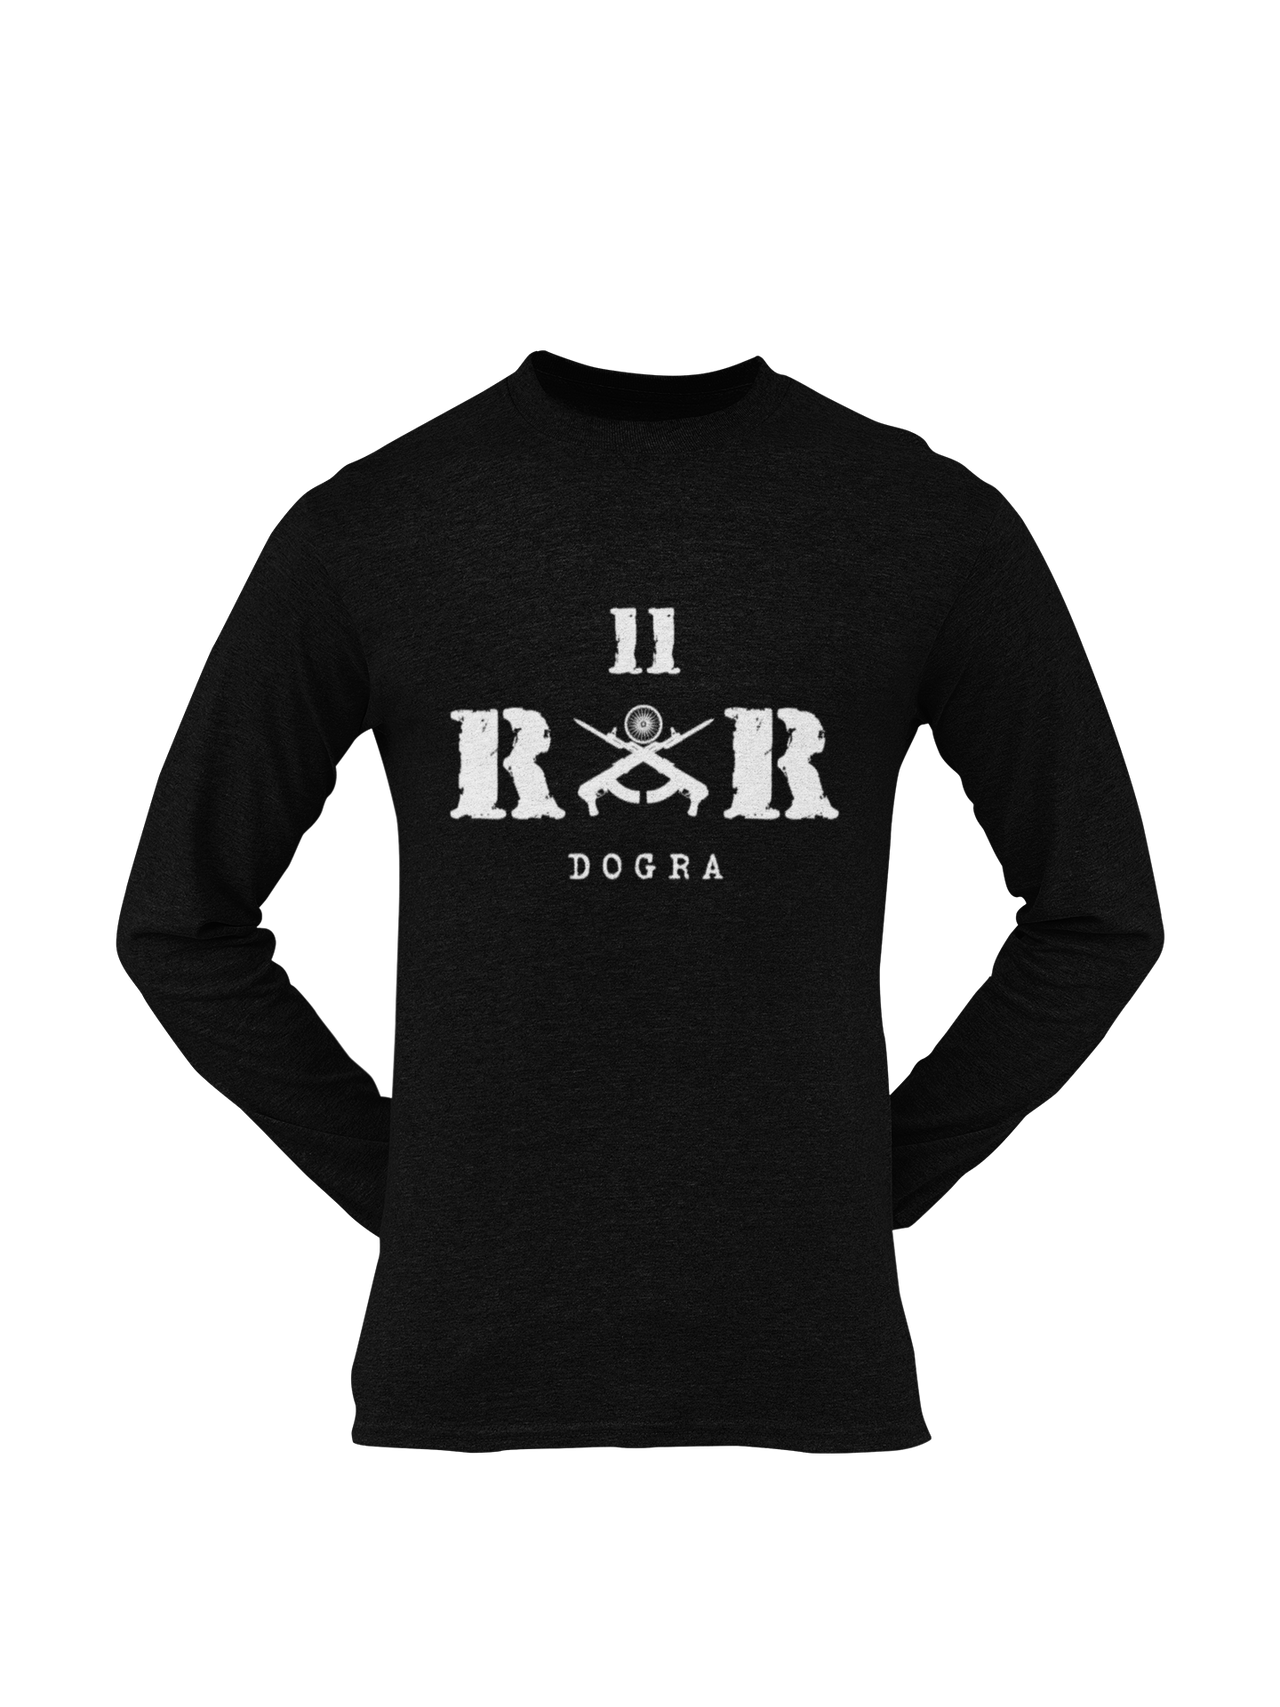 Rashtriya Rifles T-shirt - 11 RR Dogra (Men)